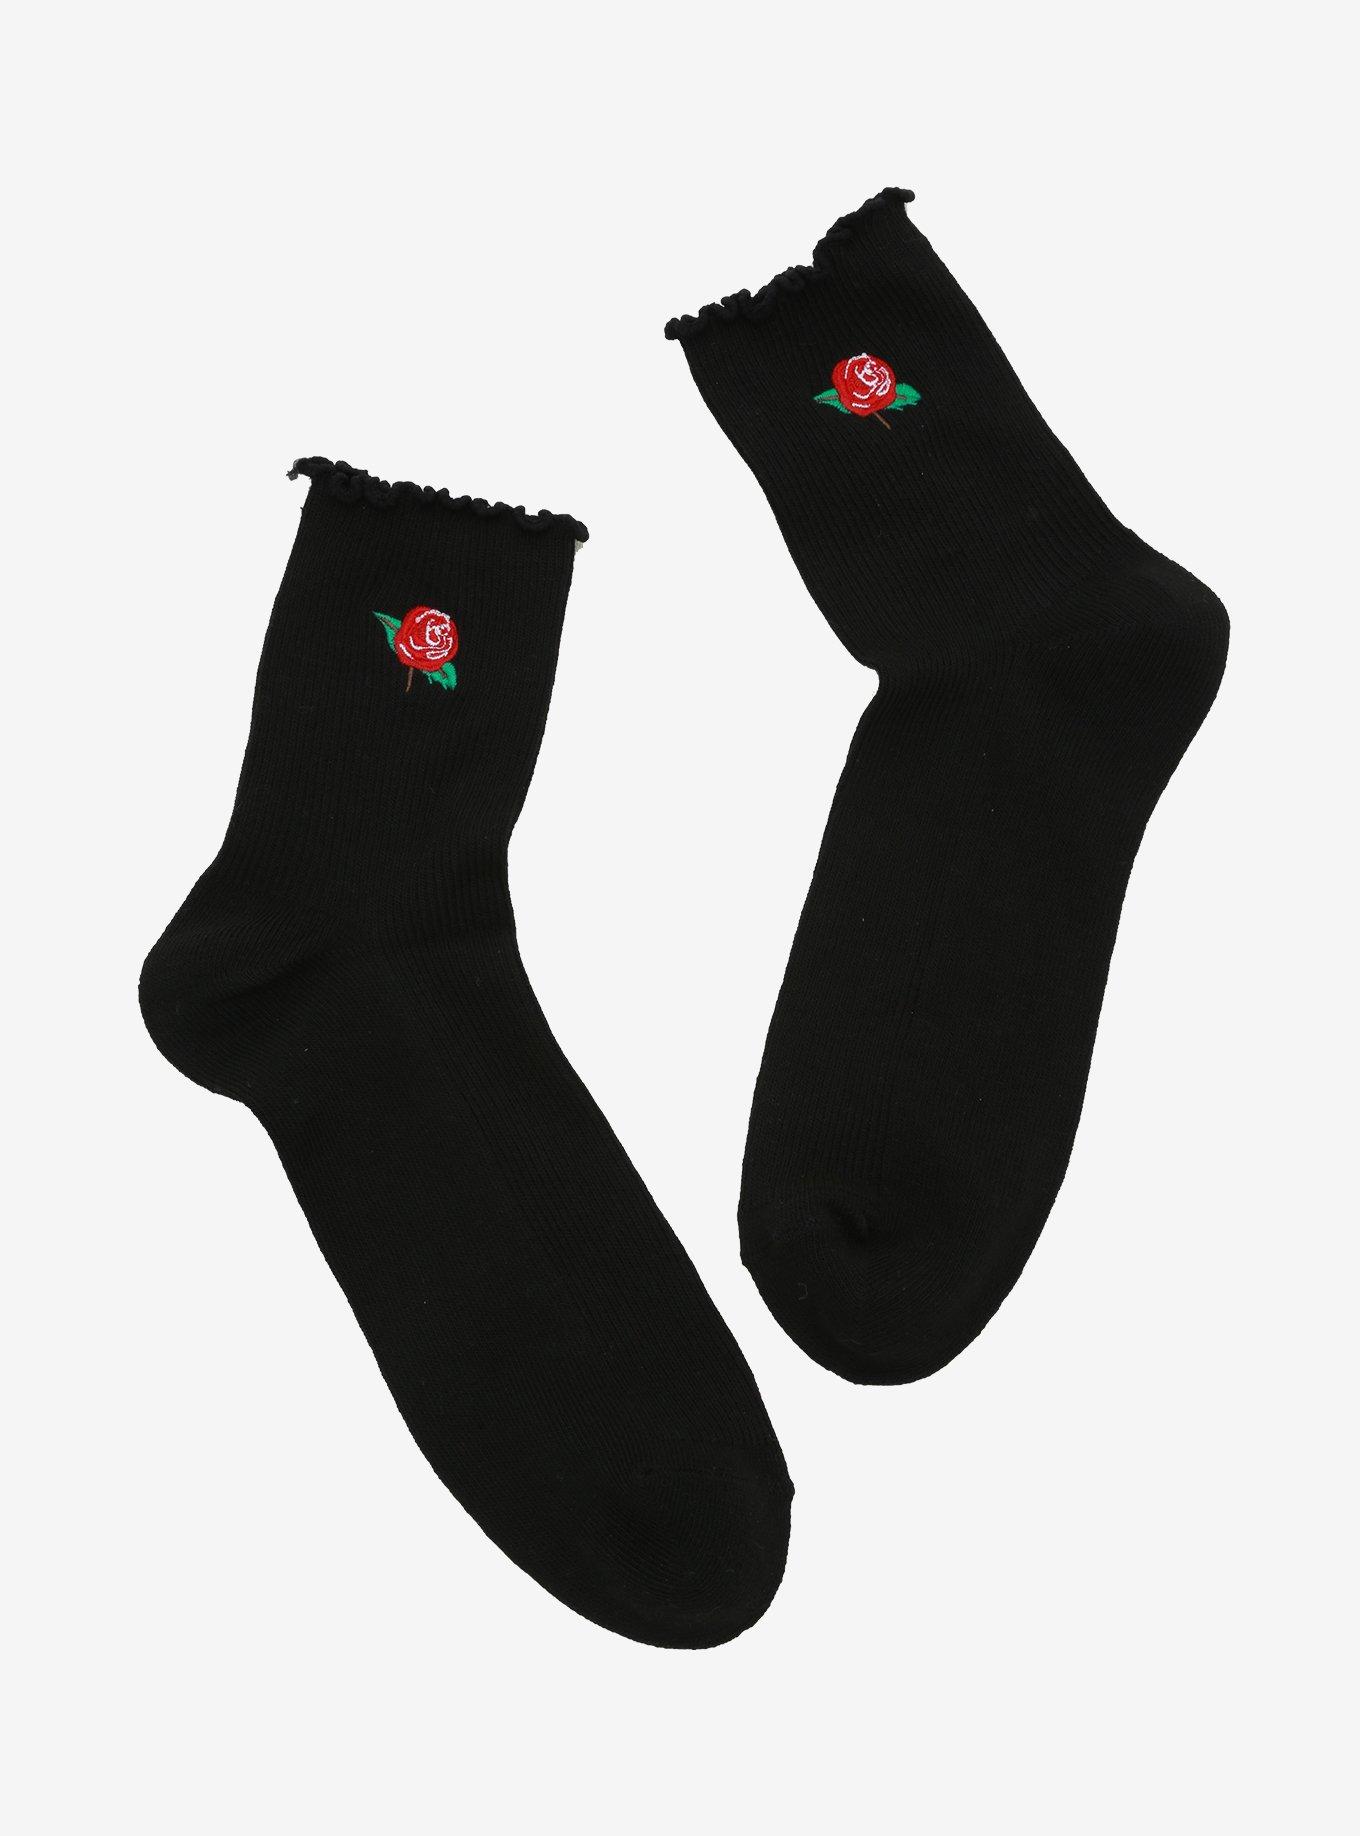 Rose Black Ankle Socks, , hi-res